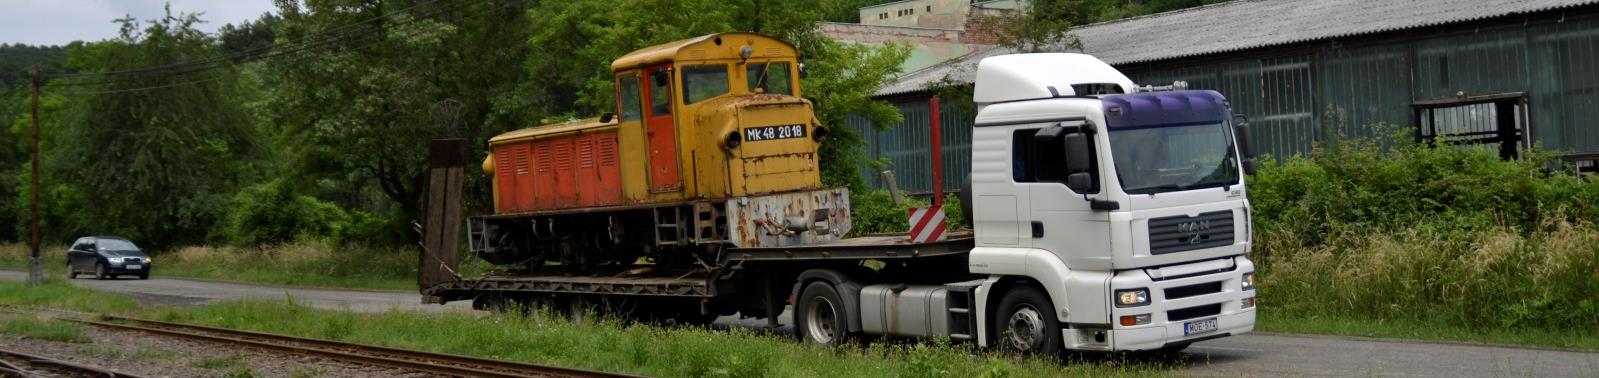 Nosztalgia Mit hozott még 2015? Ahogy a fenti kép is mutatja, visszaérkezet Szilvásváradról az Mk48 2018-a pályaszámú mozdony.